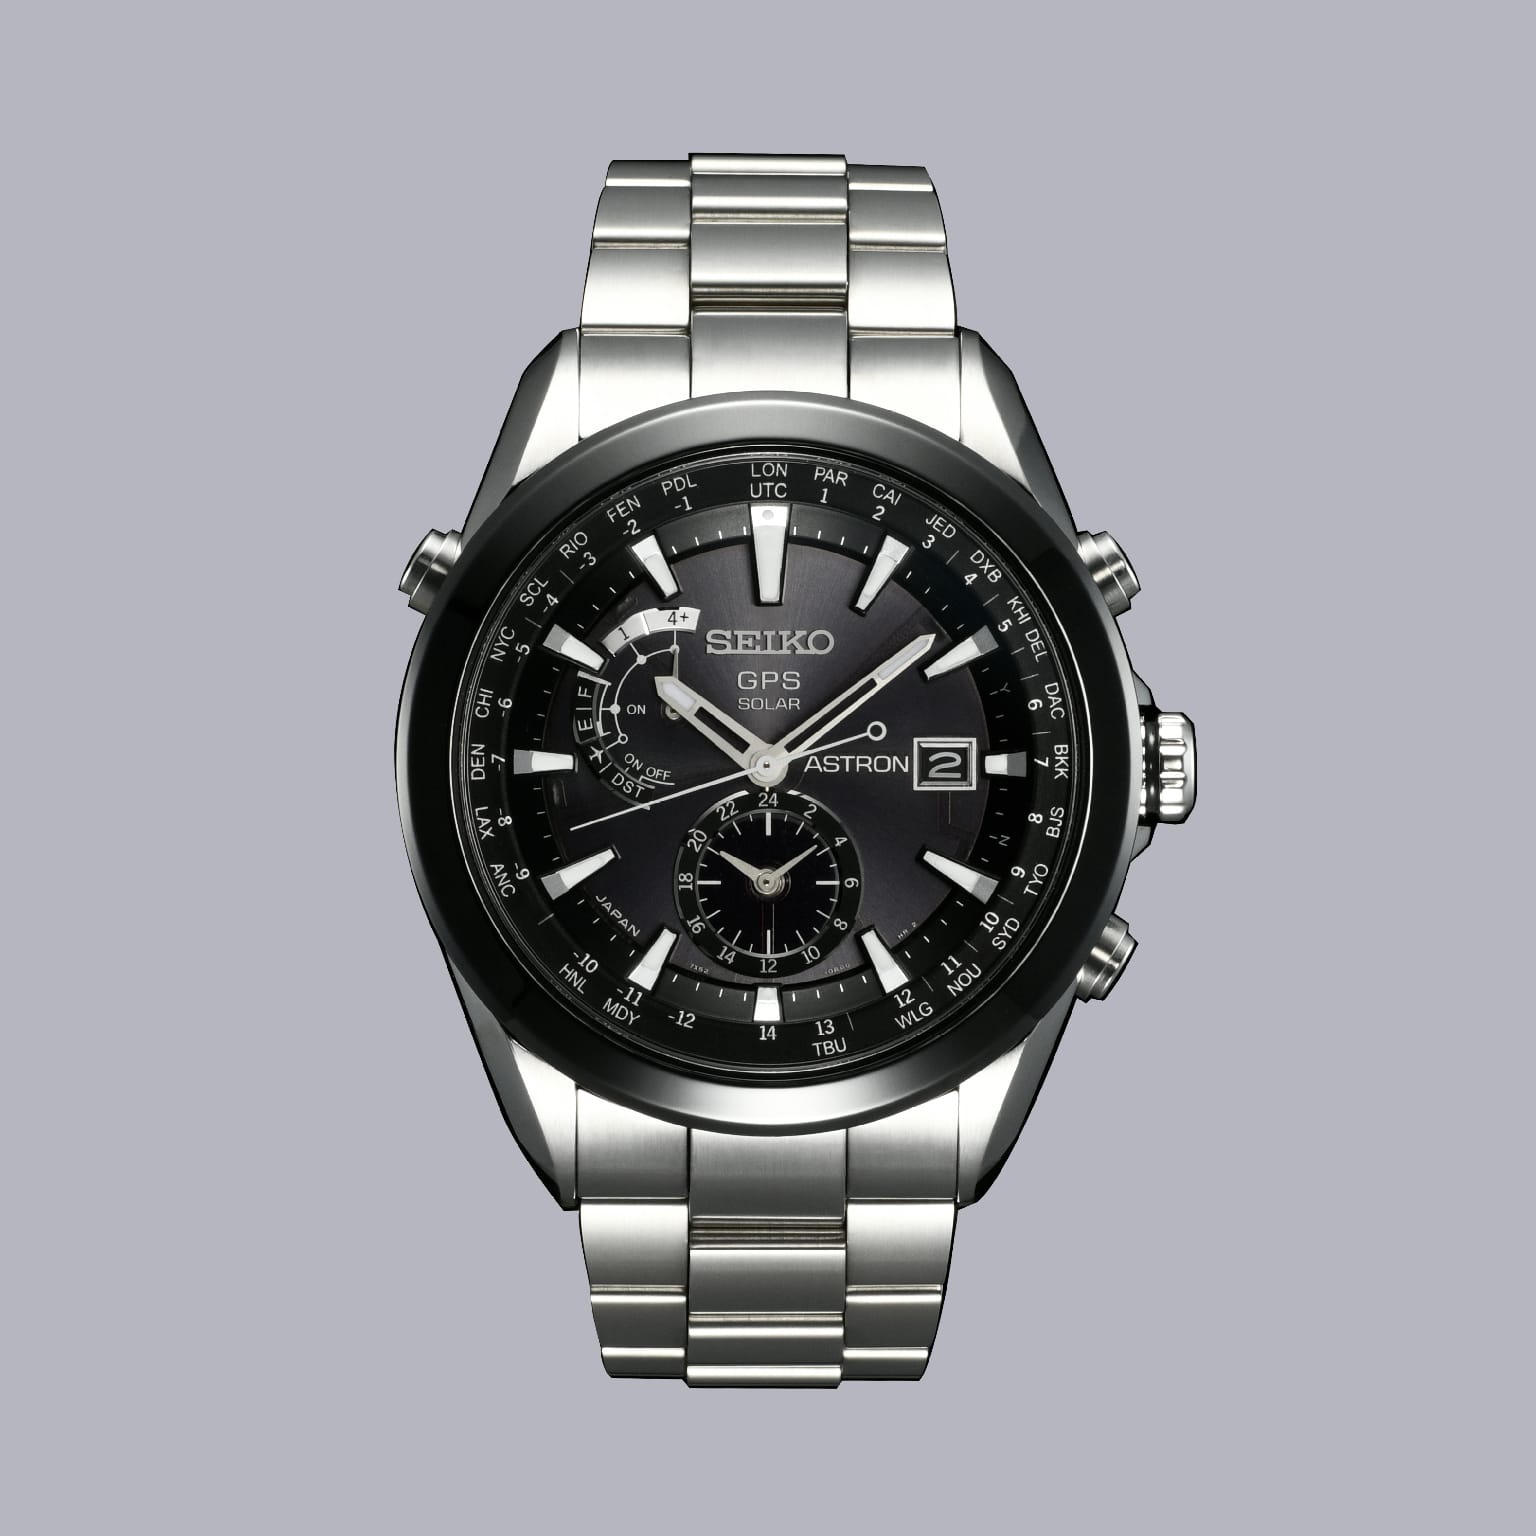 2012 GPS Solar Watch Seiko Astron | Seiko Design 140